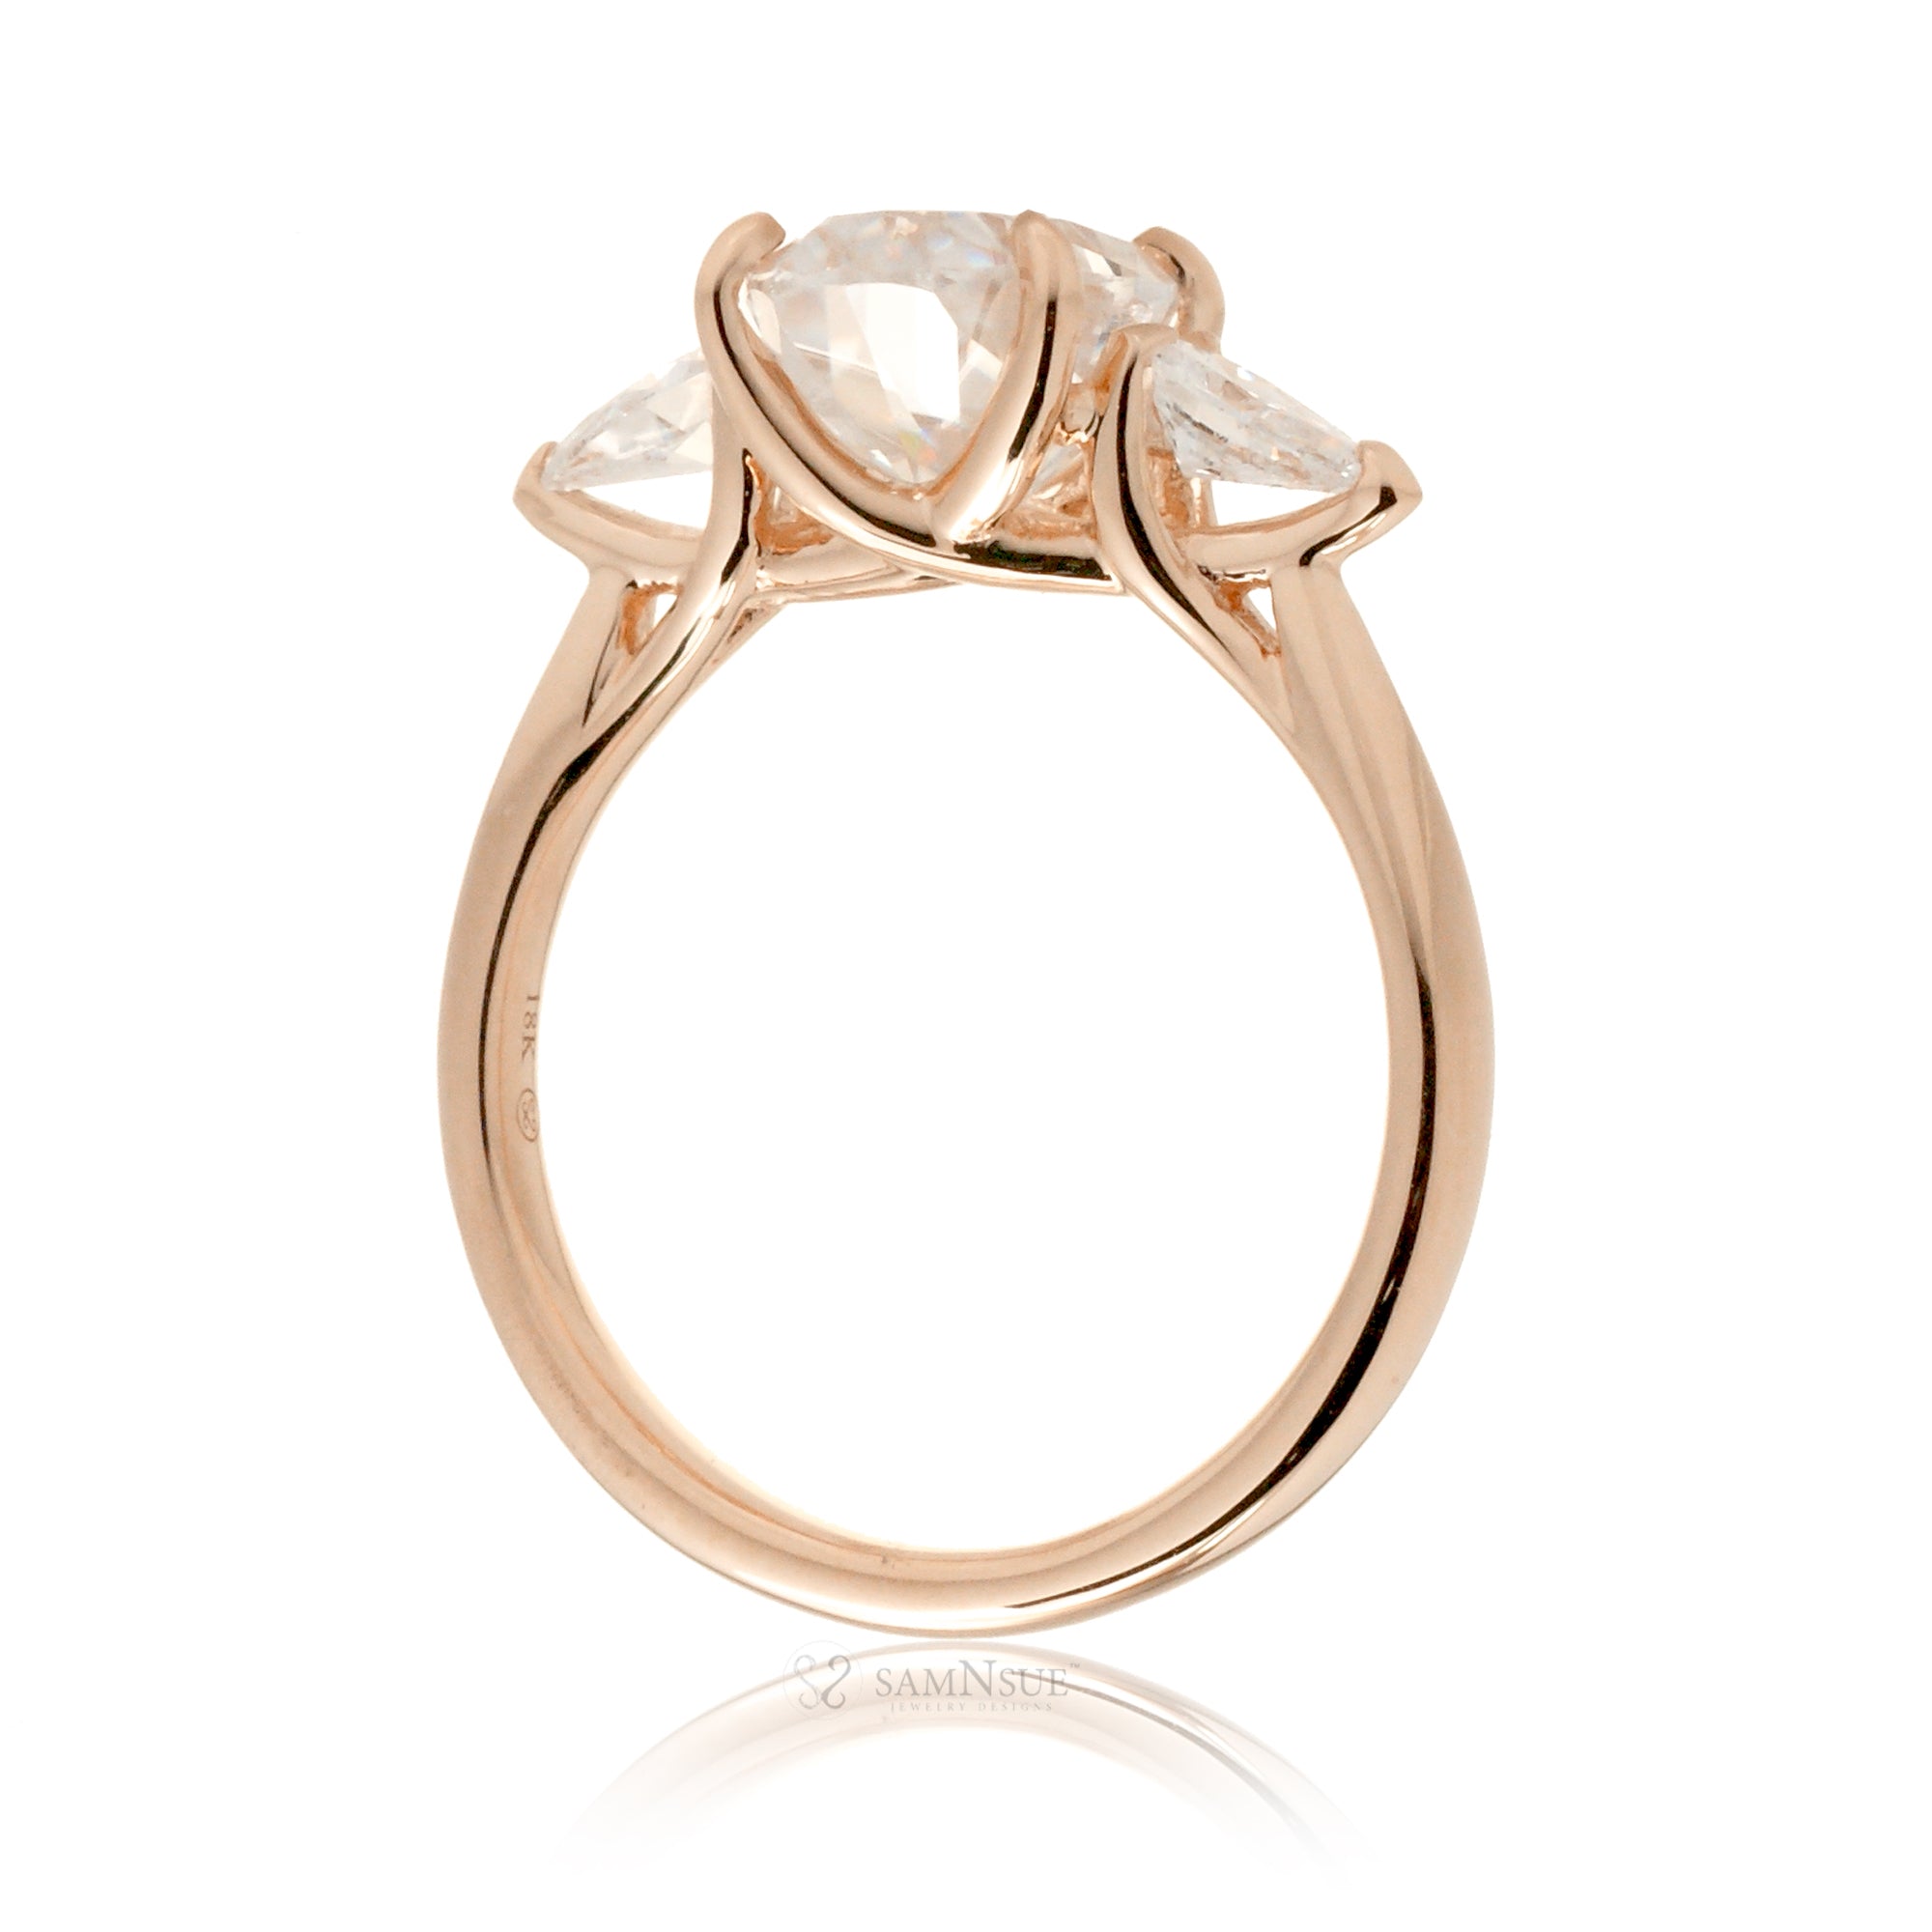 The Iris Oval Diamond Ring (Lab-grown)